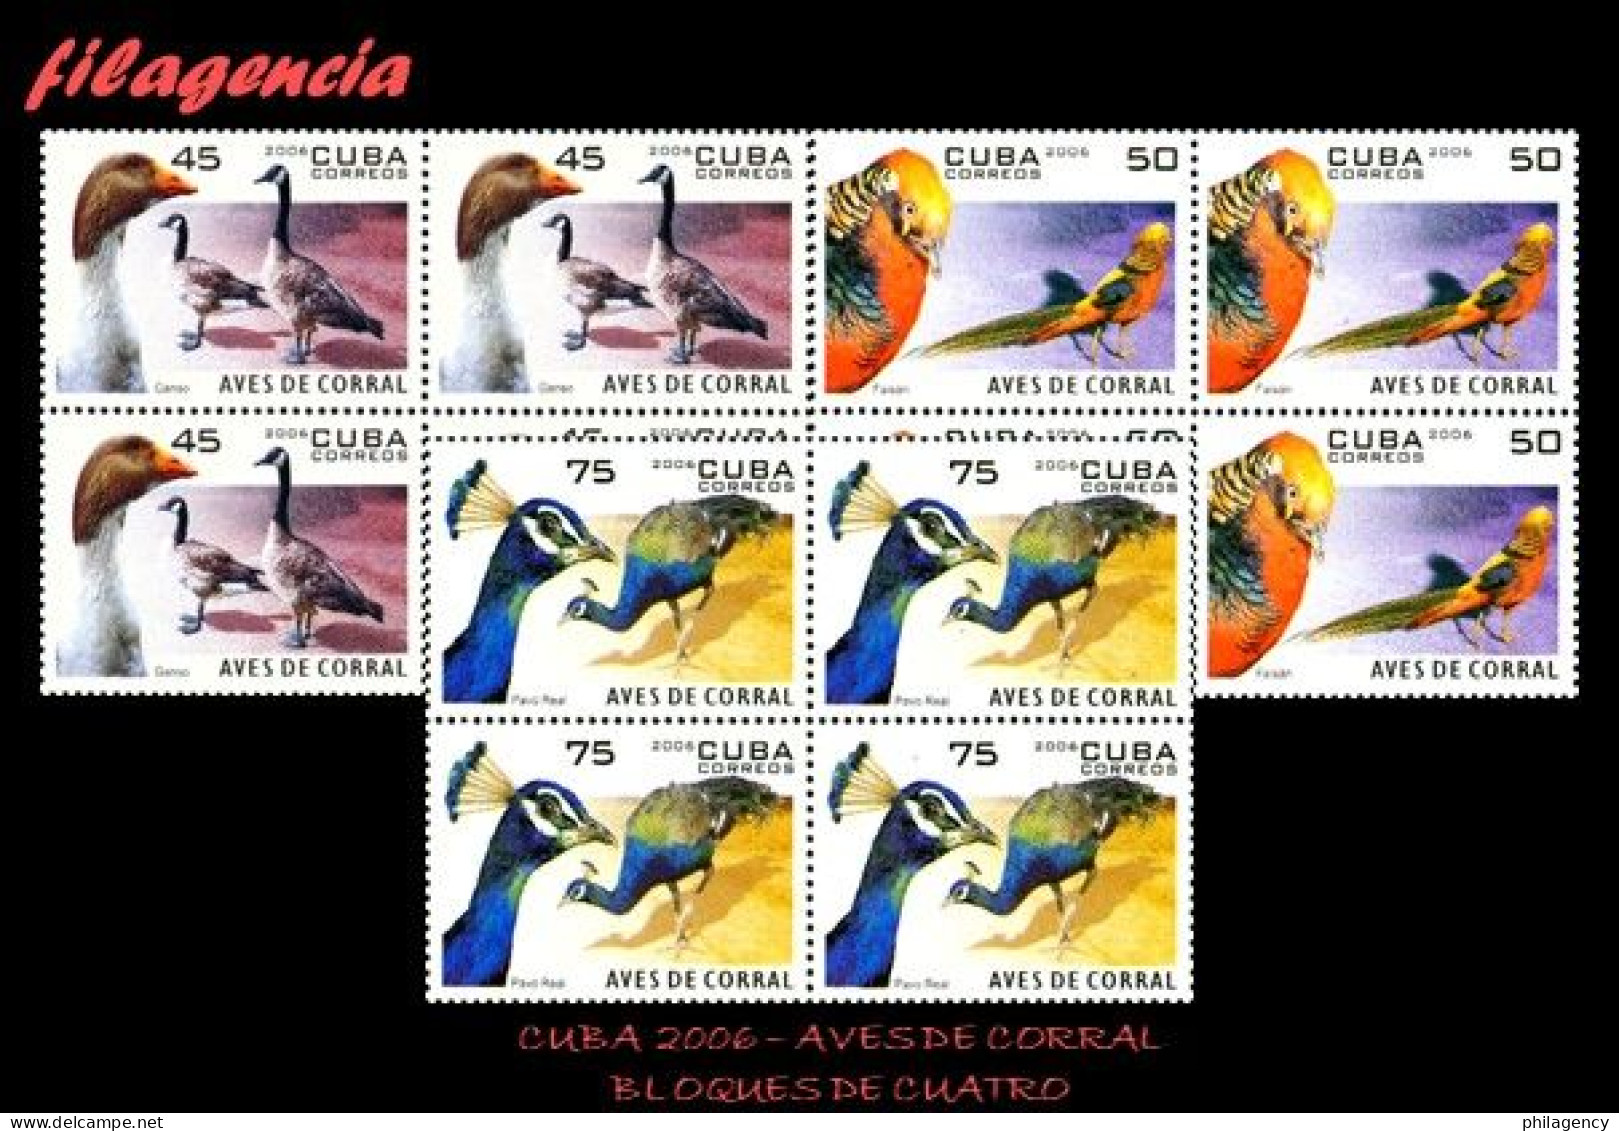 CUBA. BLOQUES DE CUATRO. 2006-13 FAUNA. AVES DE CORRAL - Nuevos